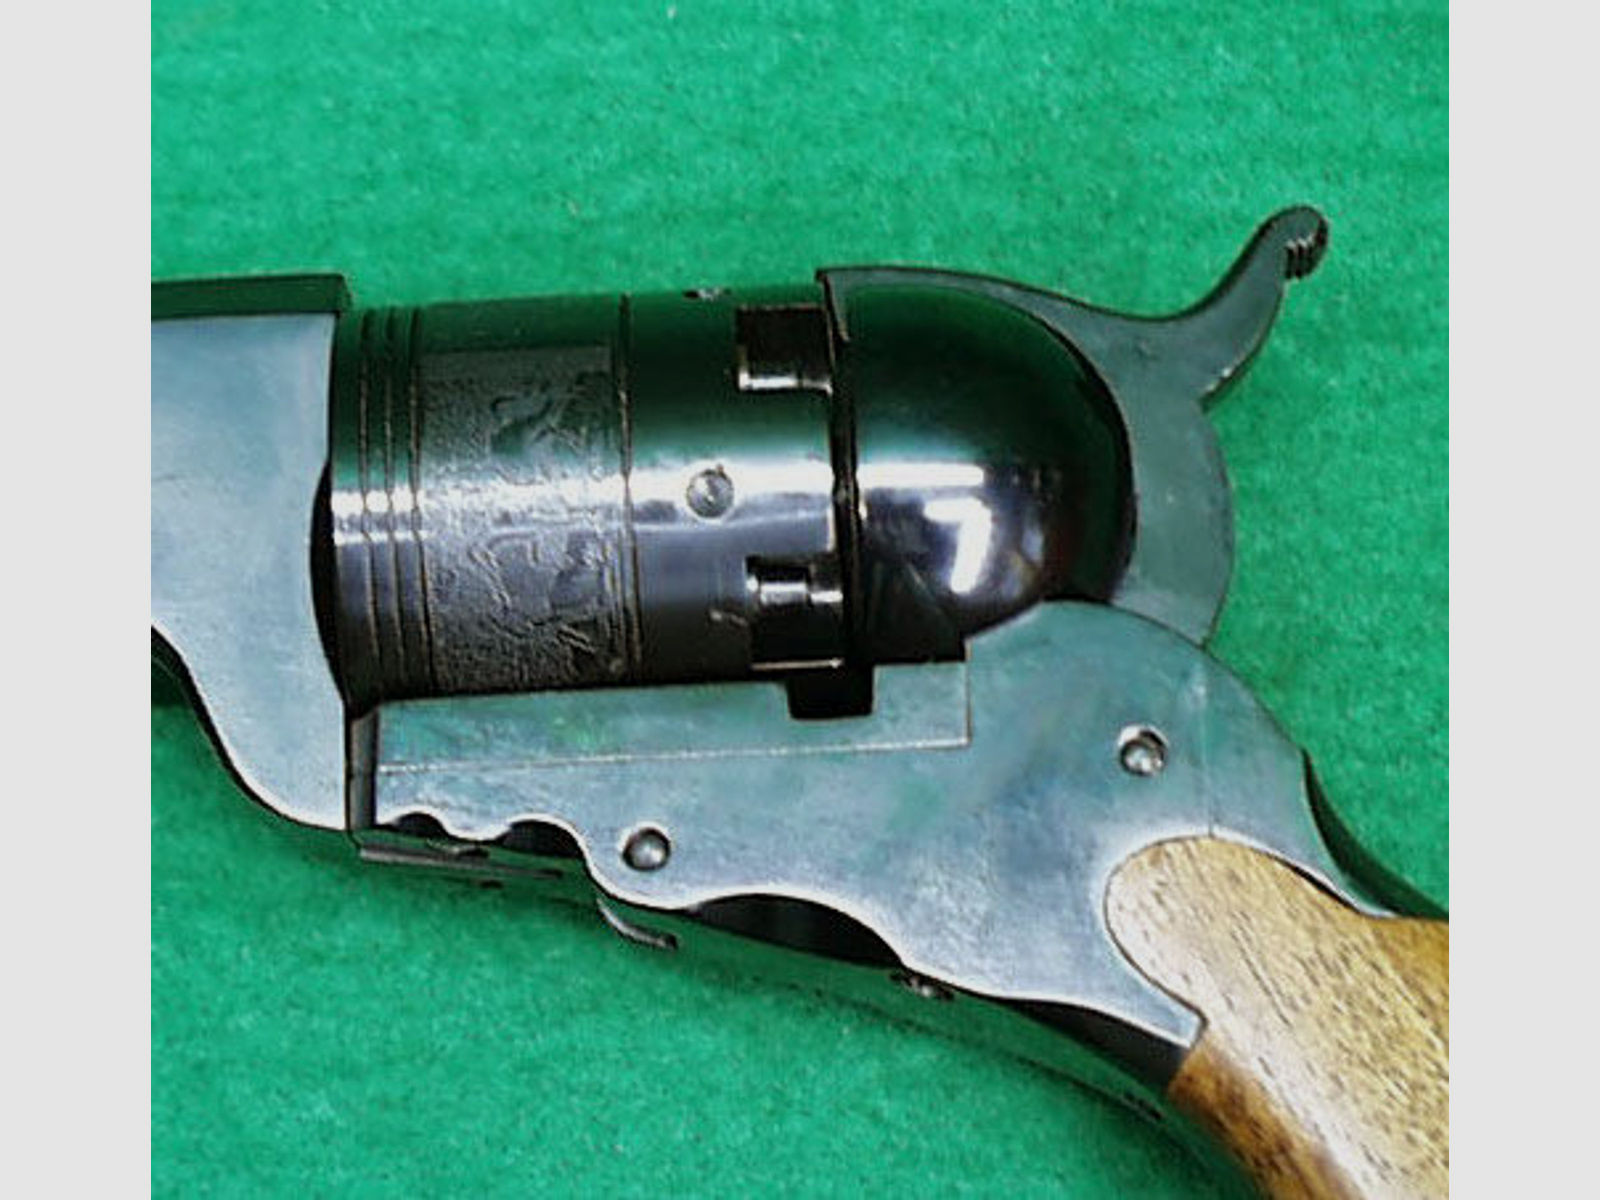 Pietta	 Colt 1836 Paterson